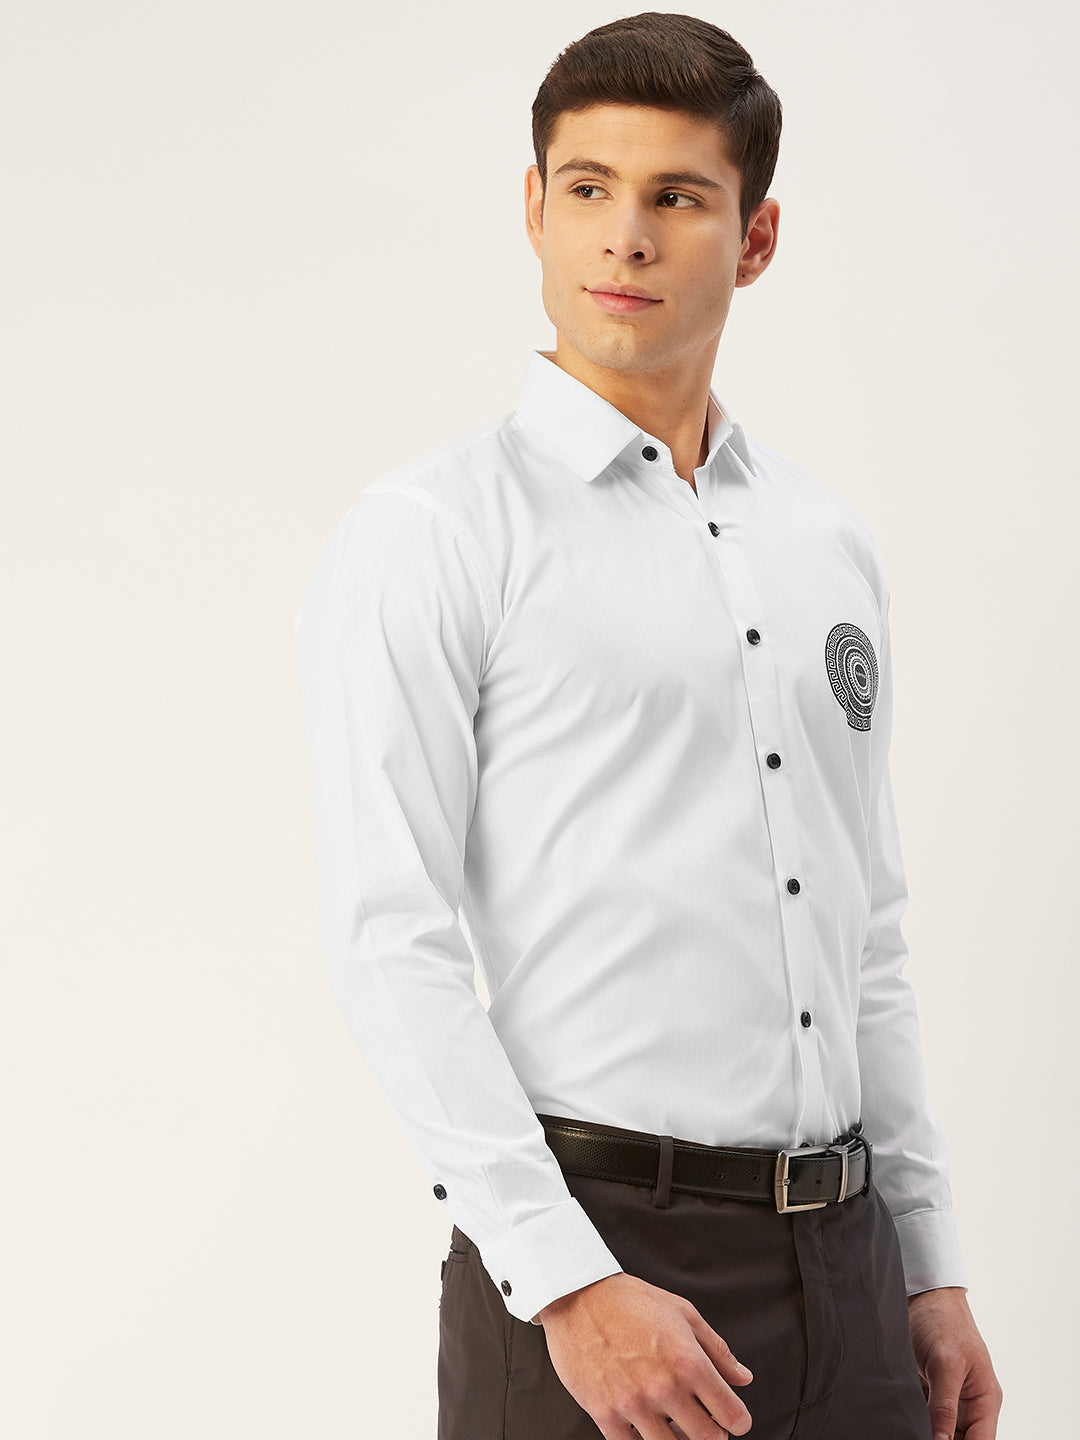 Men's Cotton Printed Formal Shirts ( SF 807White ) - Jainish